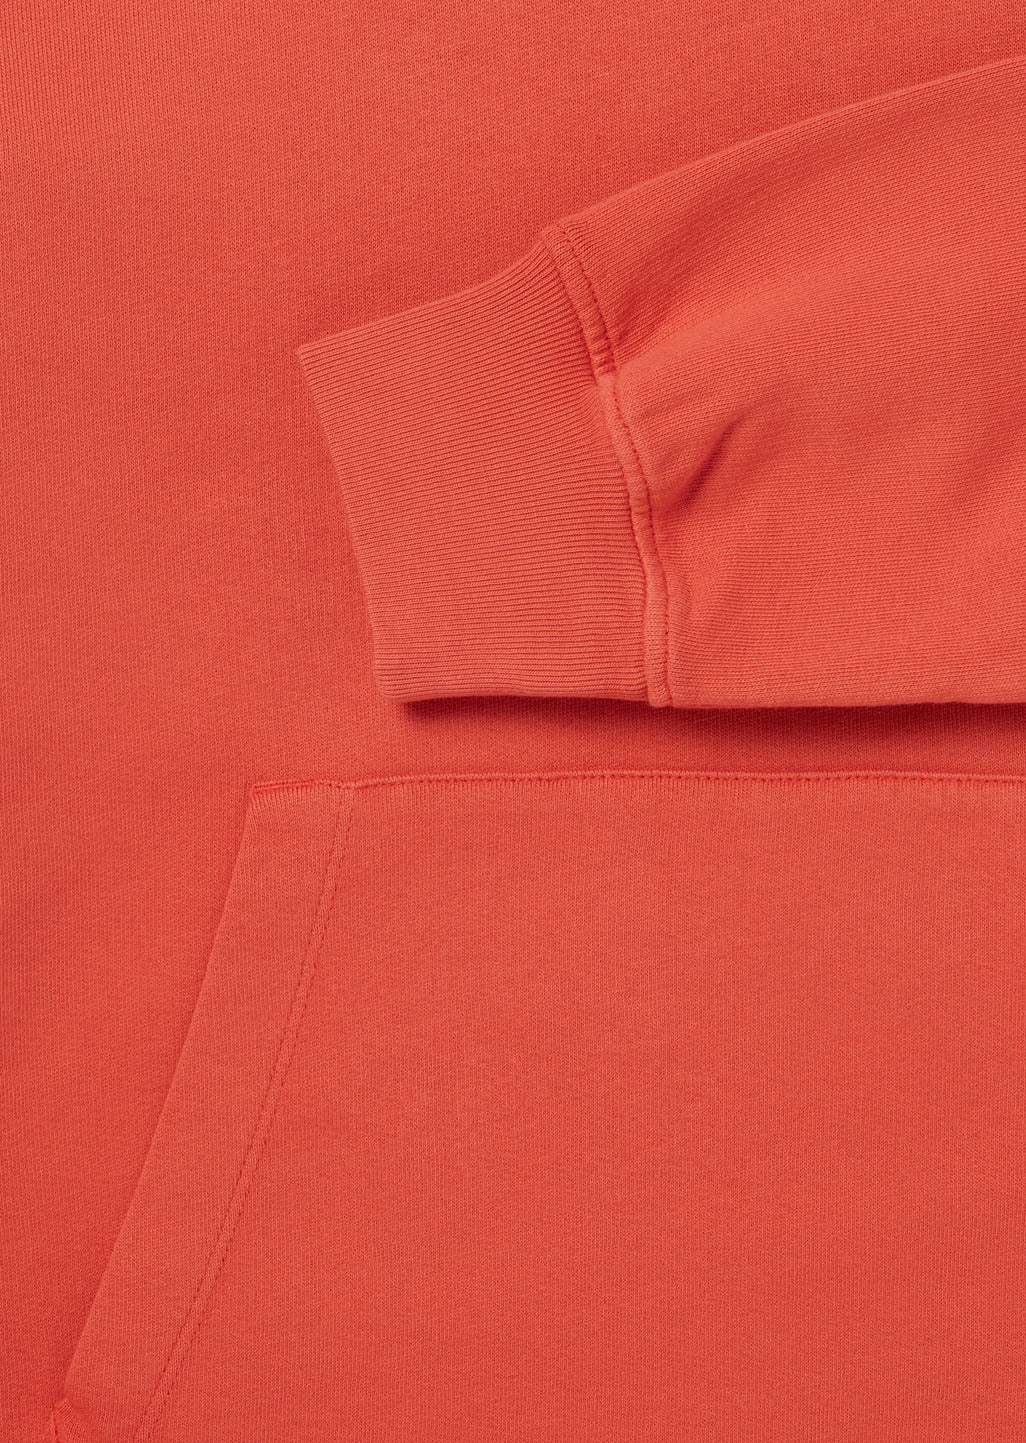 Vintage Lightweight Hoody in Burnt Orange – albam Clothing